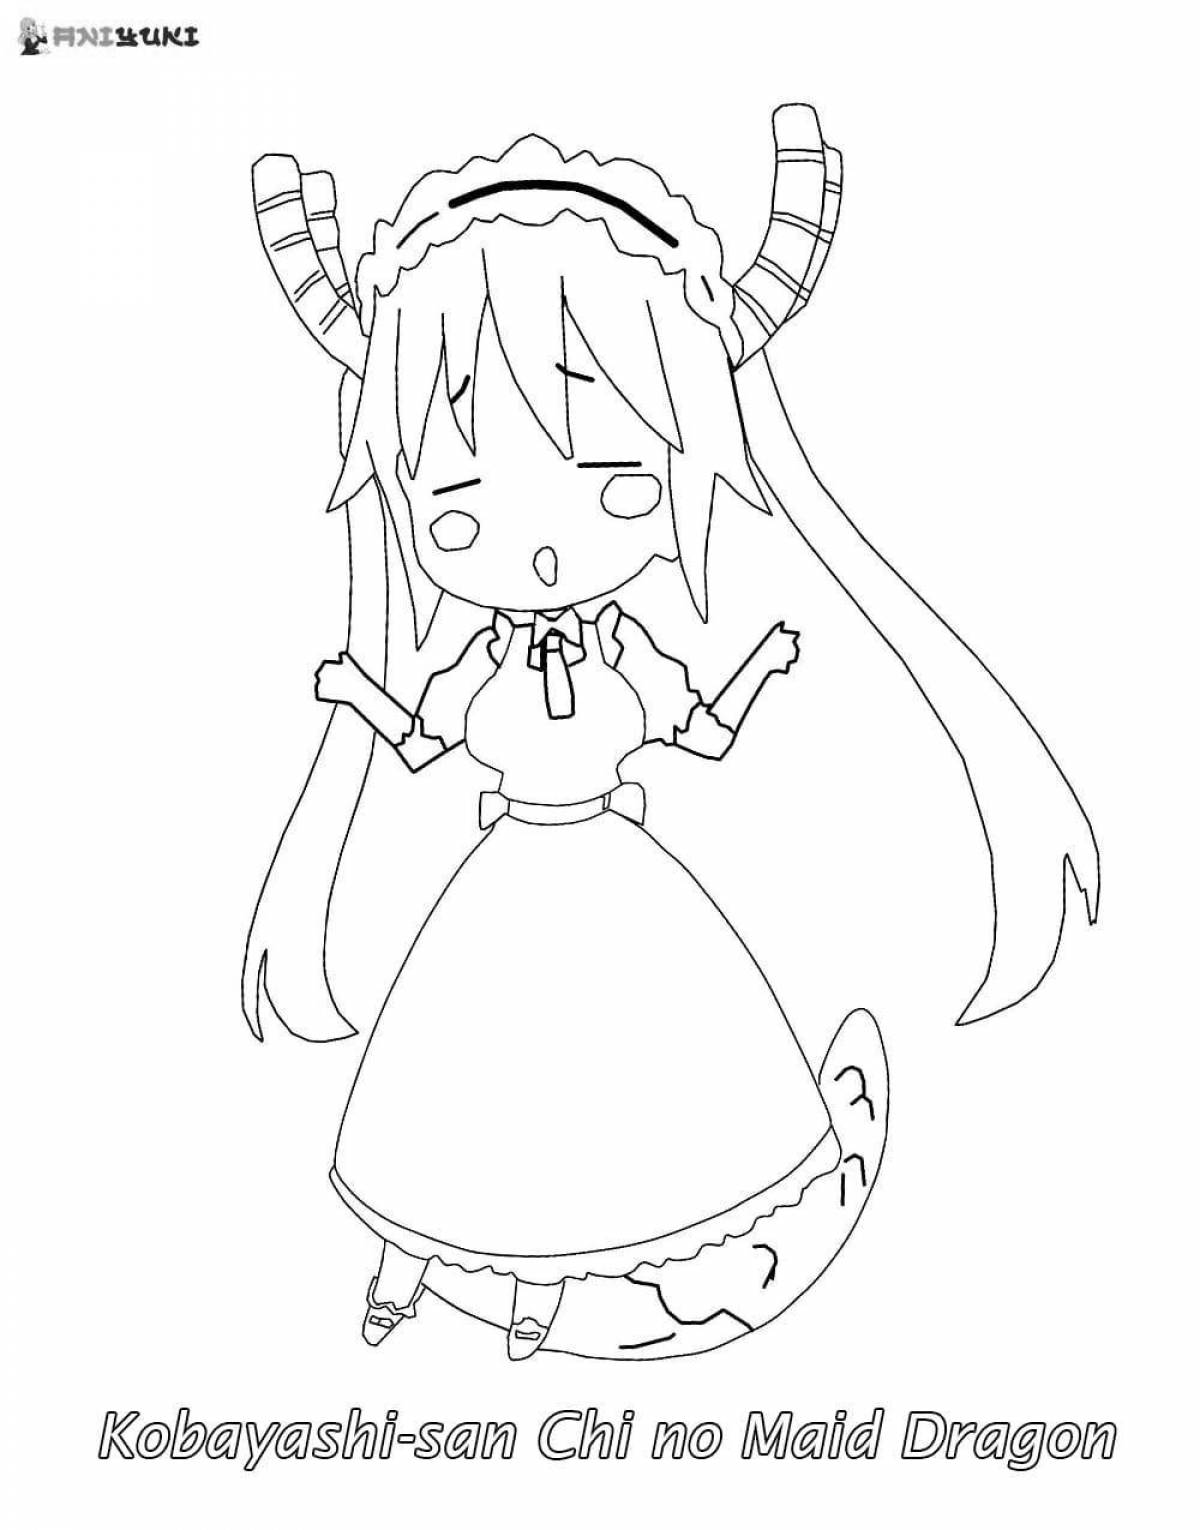 Kobayashi's cheerful anime dragon maid